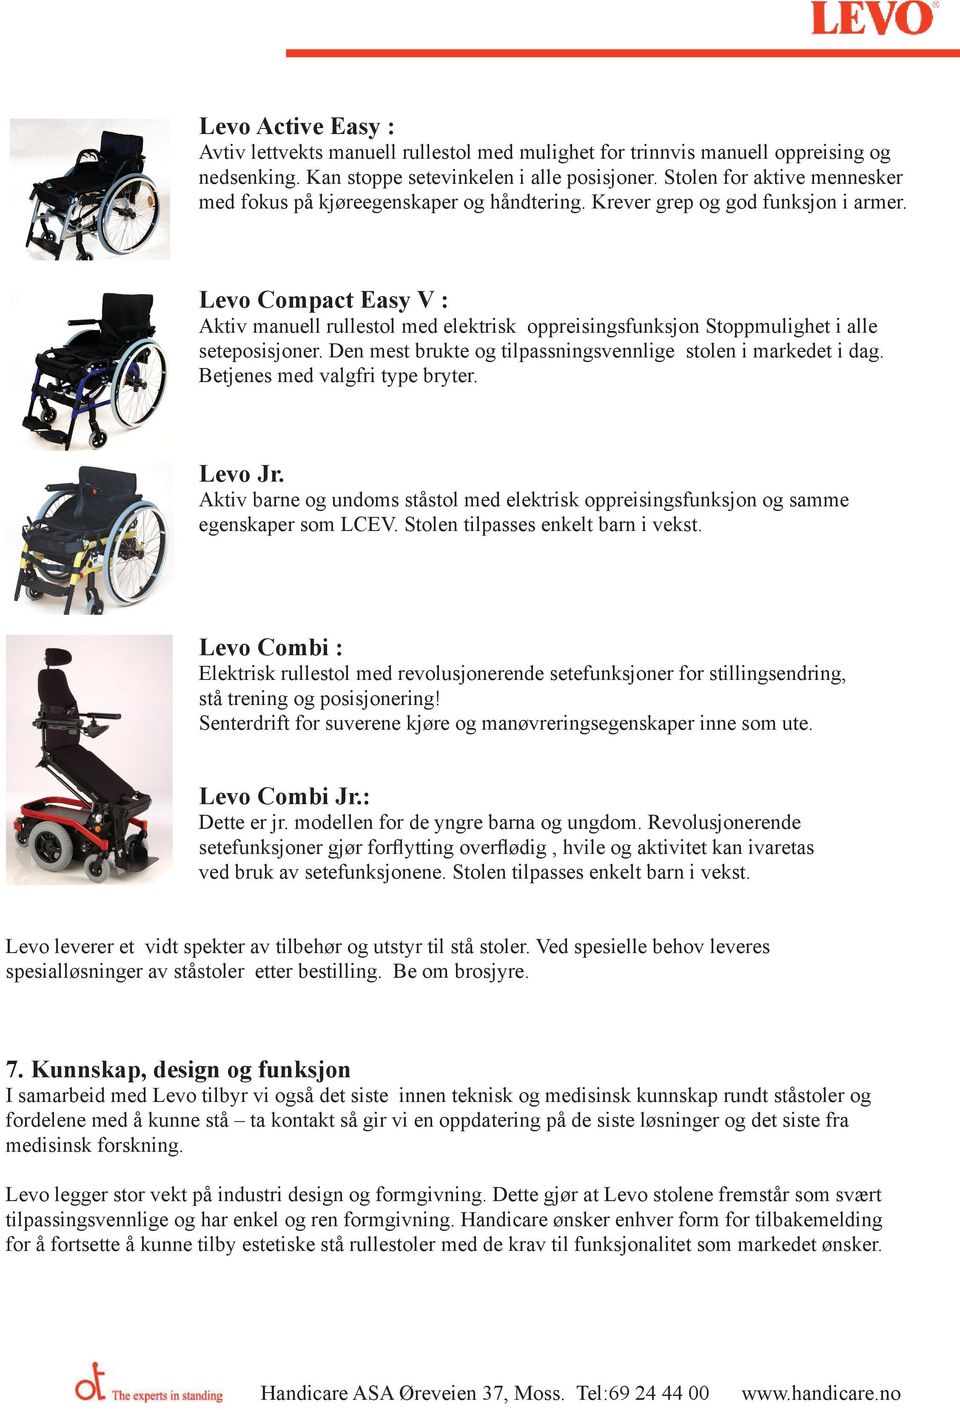 Levo Compact Easy V : Aktiv manuell rullestol med elektrisk oppreisingsfunksjon Stoppmulighet i alle seteposisjoner. Den mest brukte og tilpassningsvennlige stolen i markedet i dag.